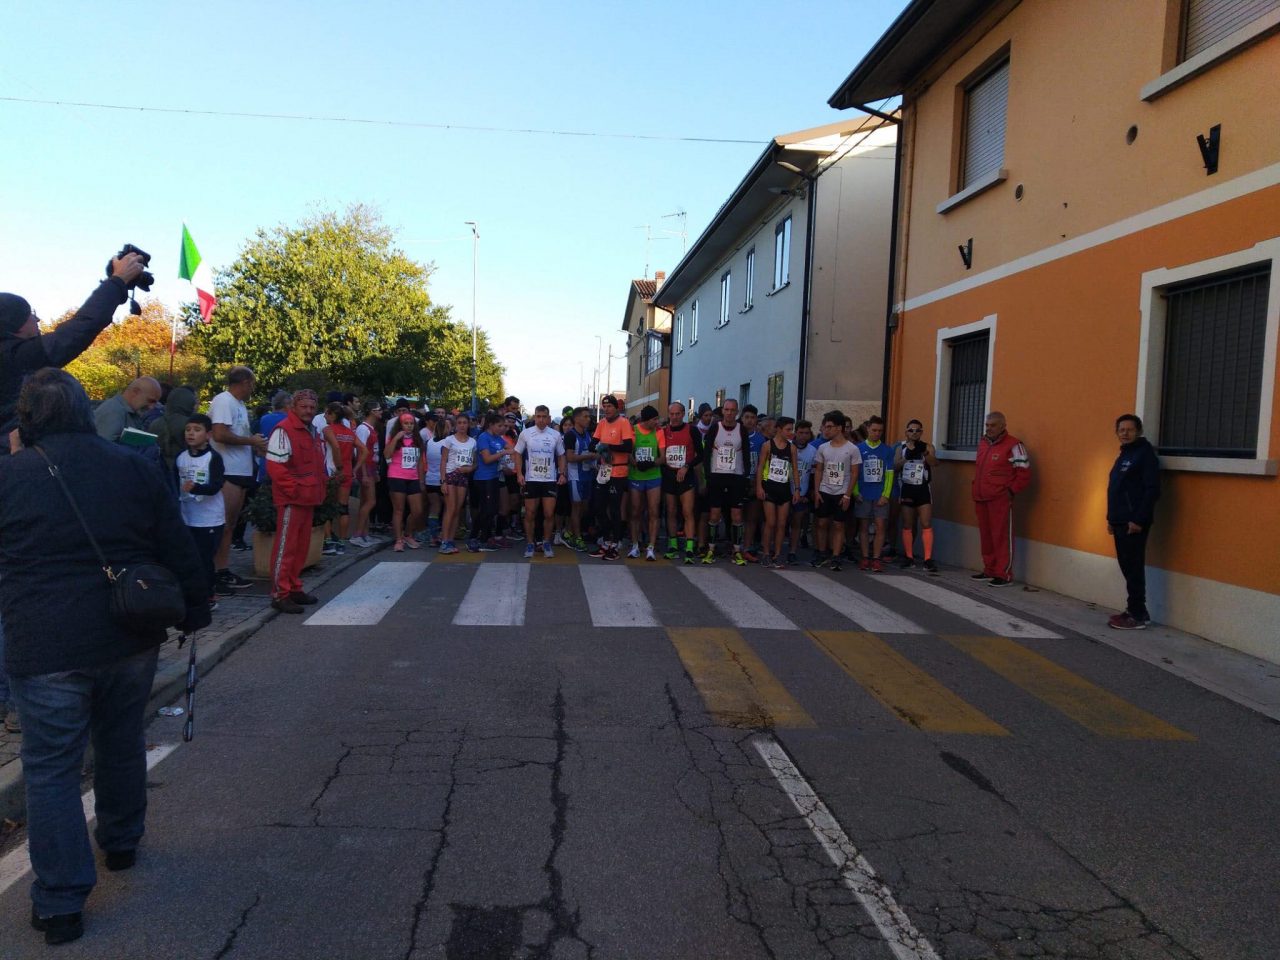 Grande gara podistica a Castelletto di Leno: in tanti pronti a correre per le vie del paese - Brescia Settegiorni